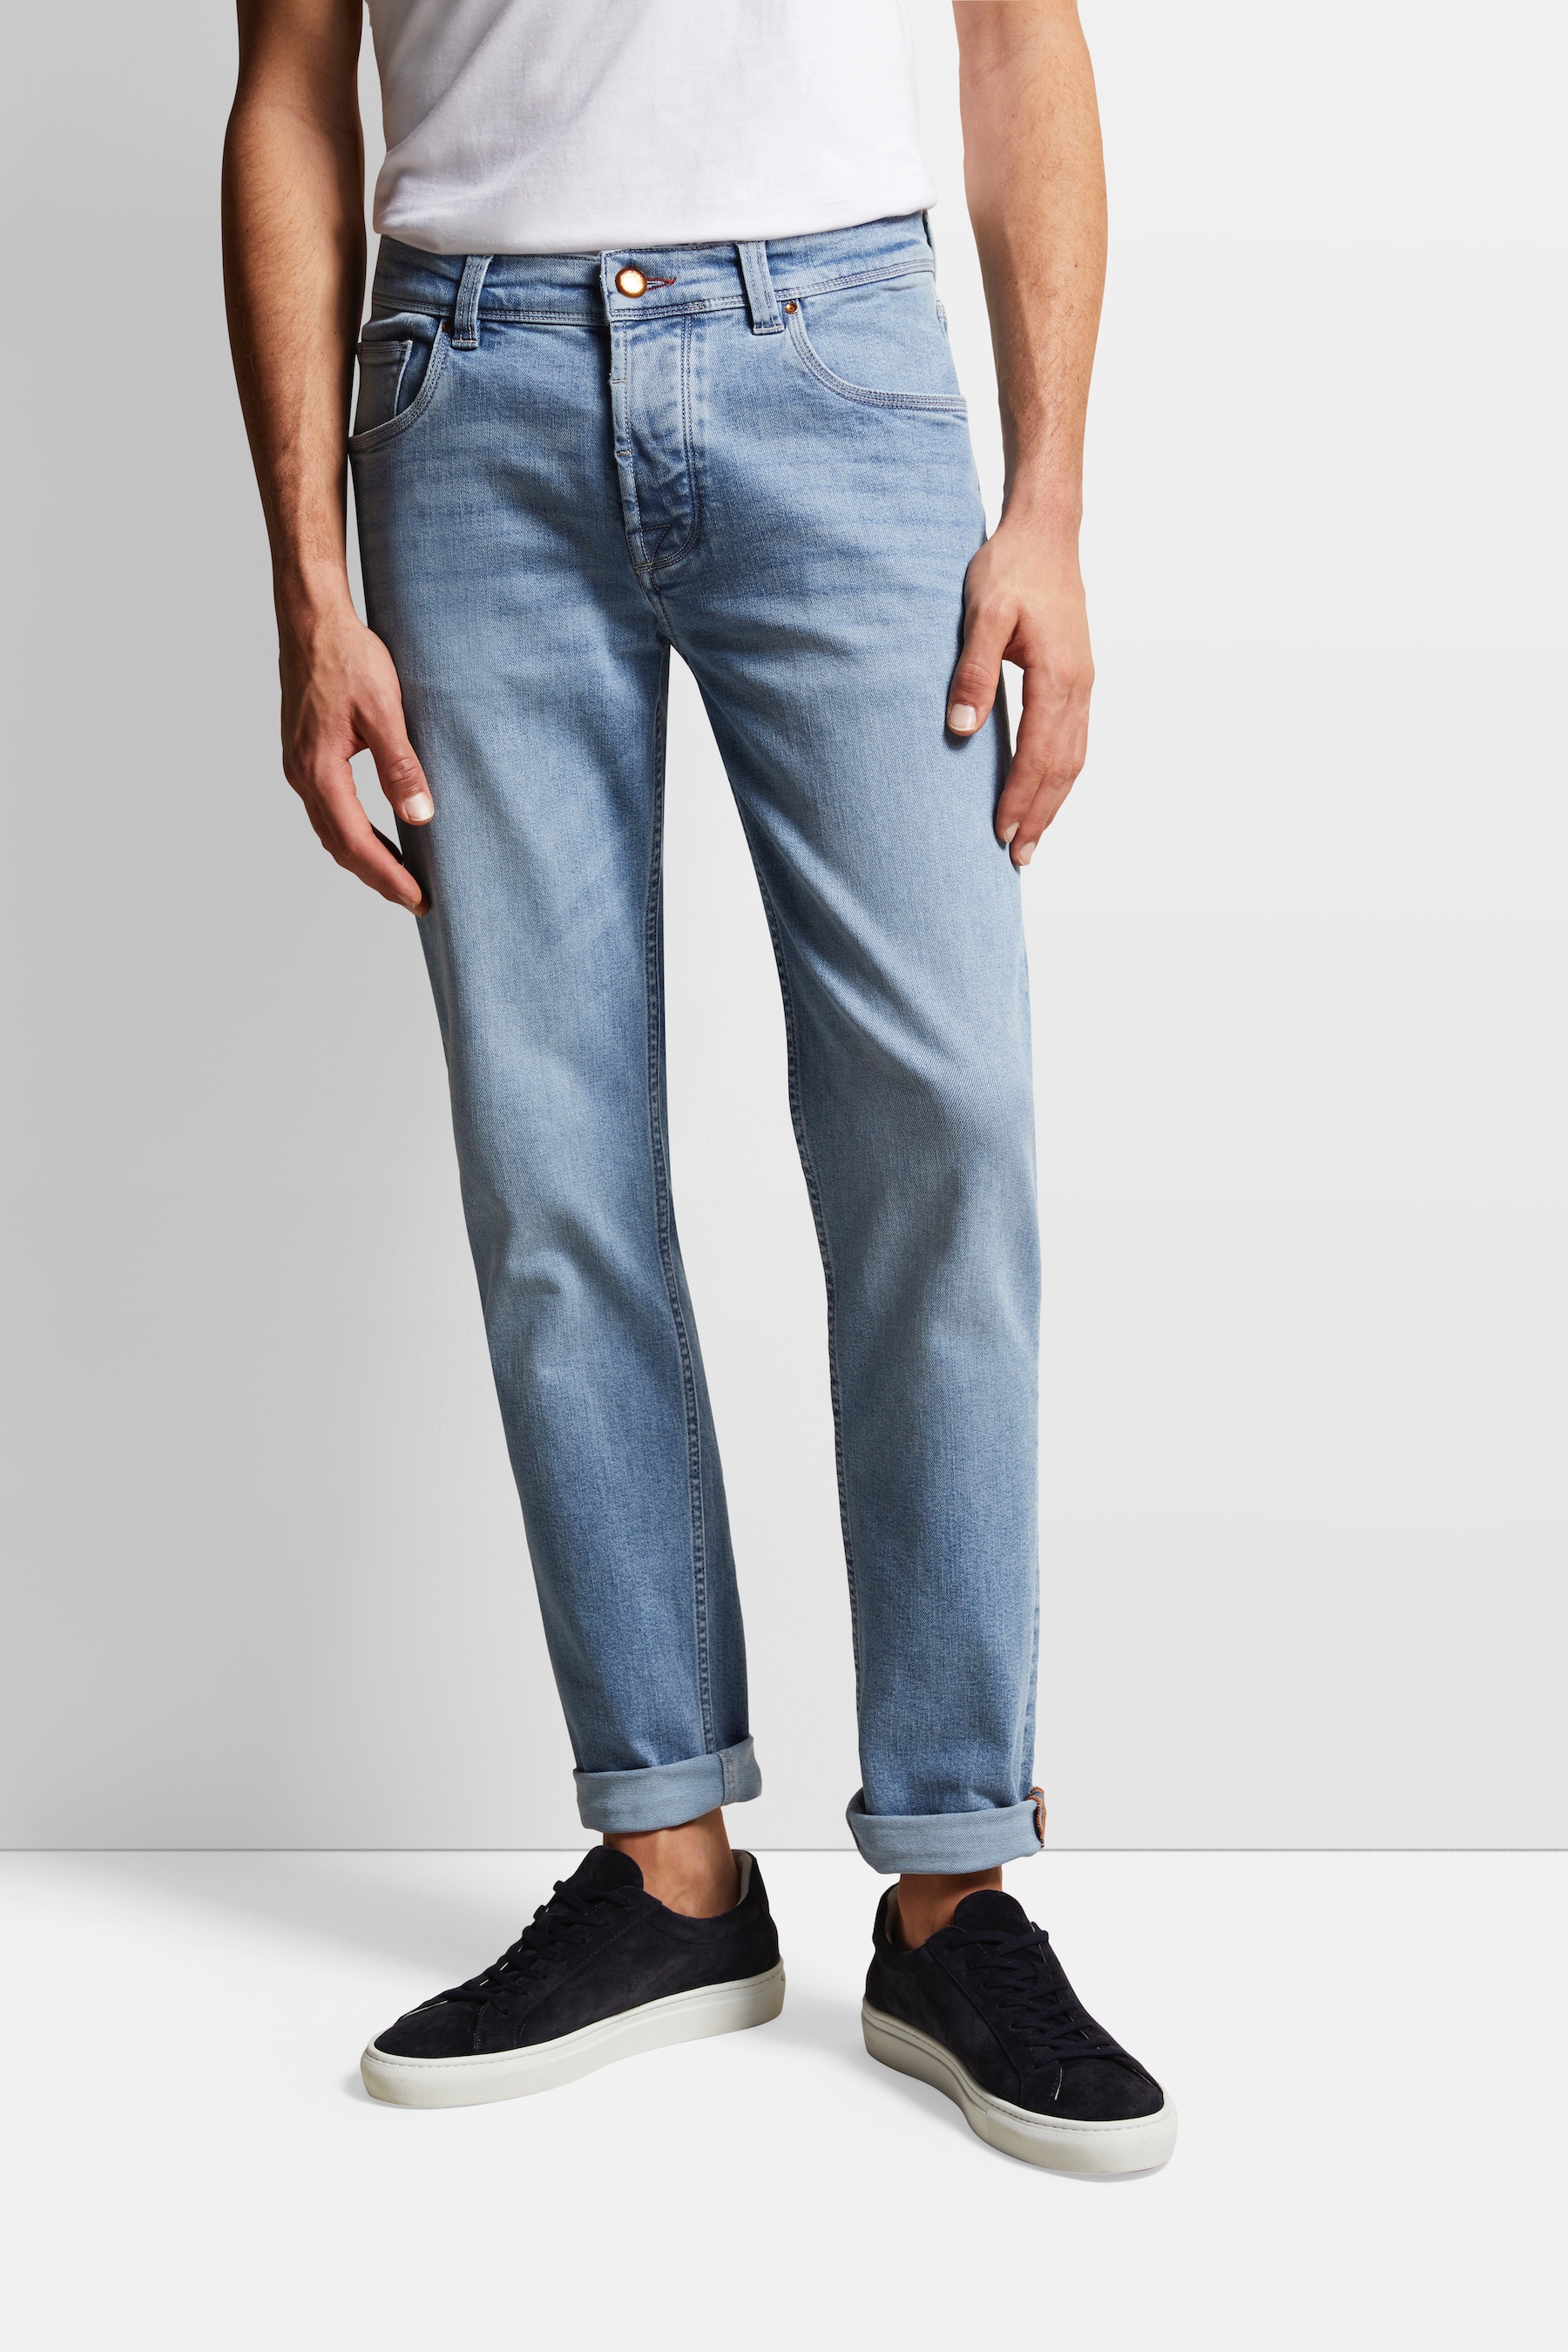 bugatti 5-Pocket-Jeans, aus elastischer Baumwolle von bugatti